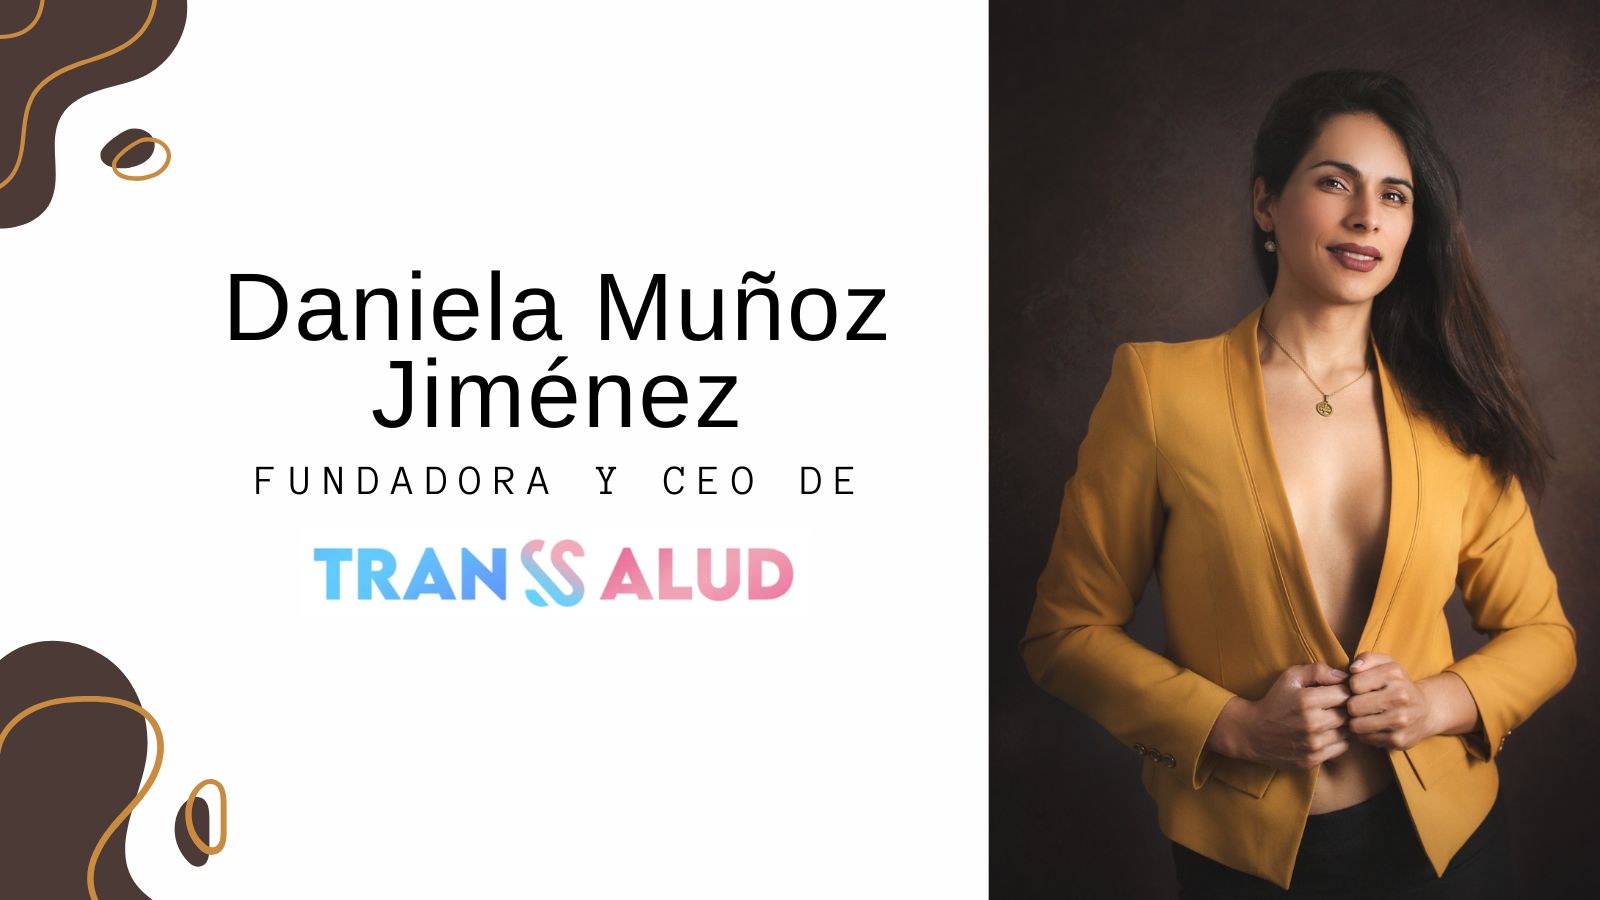 ¿Conoces a Daniela Muñoz Jiménez fundadora y CEO de Transsalud?